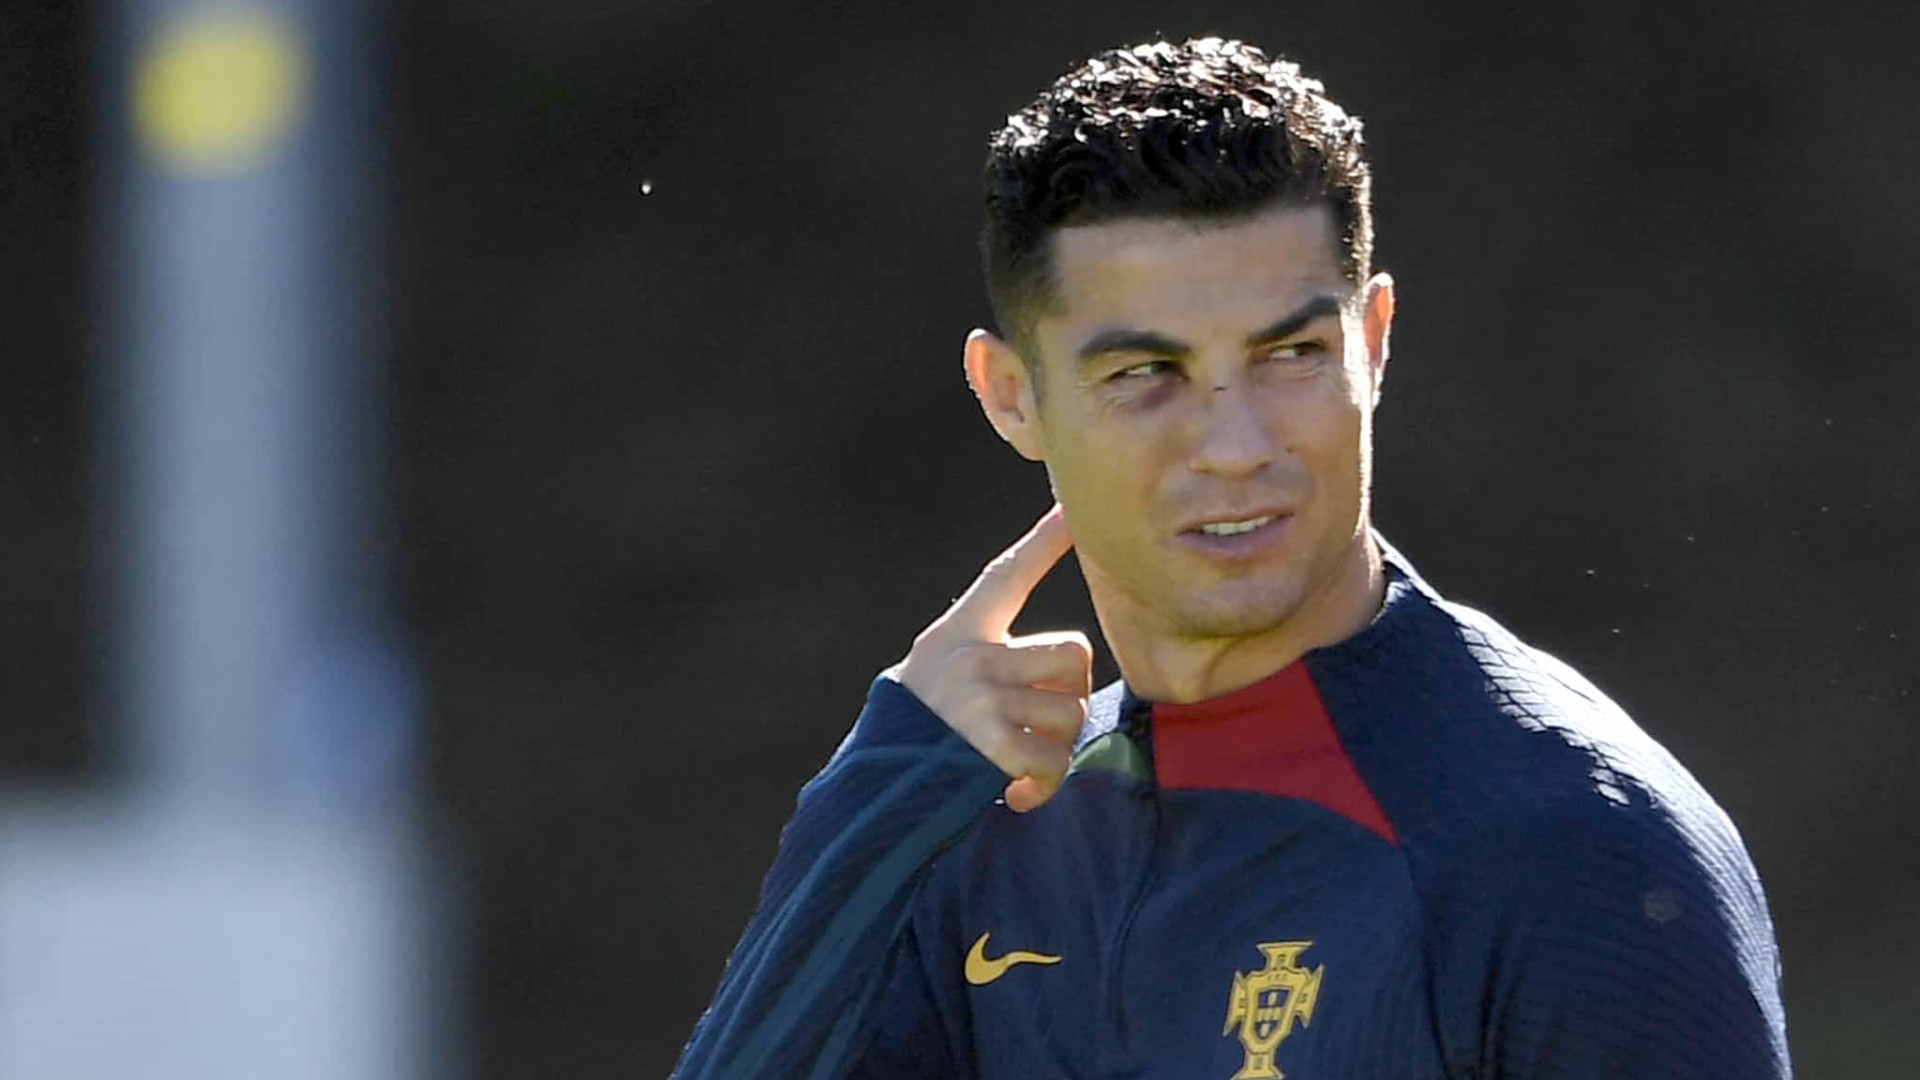 «On te recevra à bras ouverts», le coach d’un club laisse un message à Ronaldo